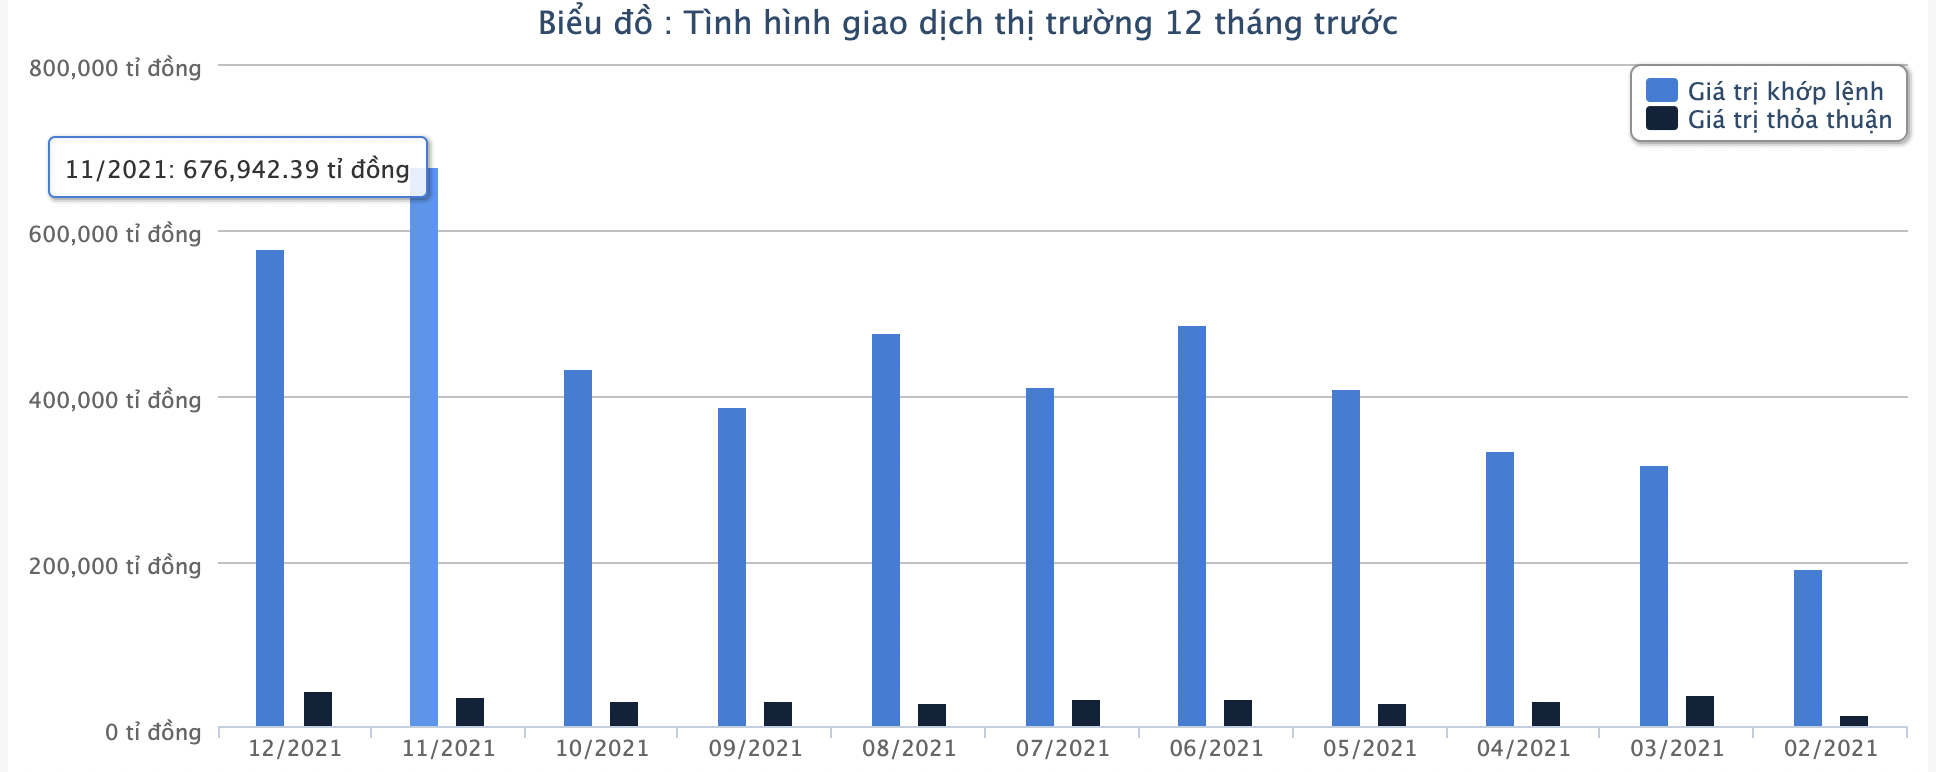 Một năm thăng hoa, chứng khoán Việt tăng mạnh top đầu thế giới - Ảnh 4.